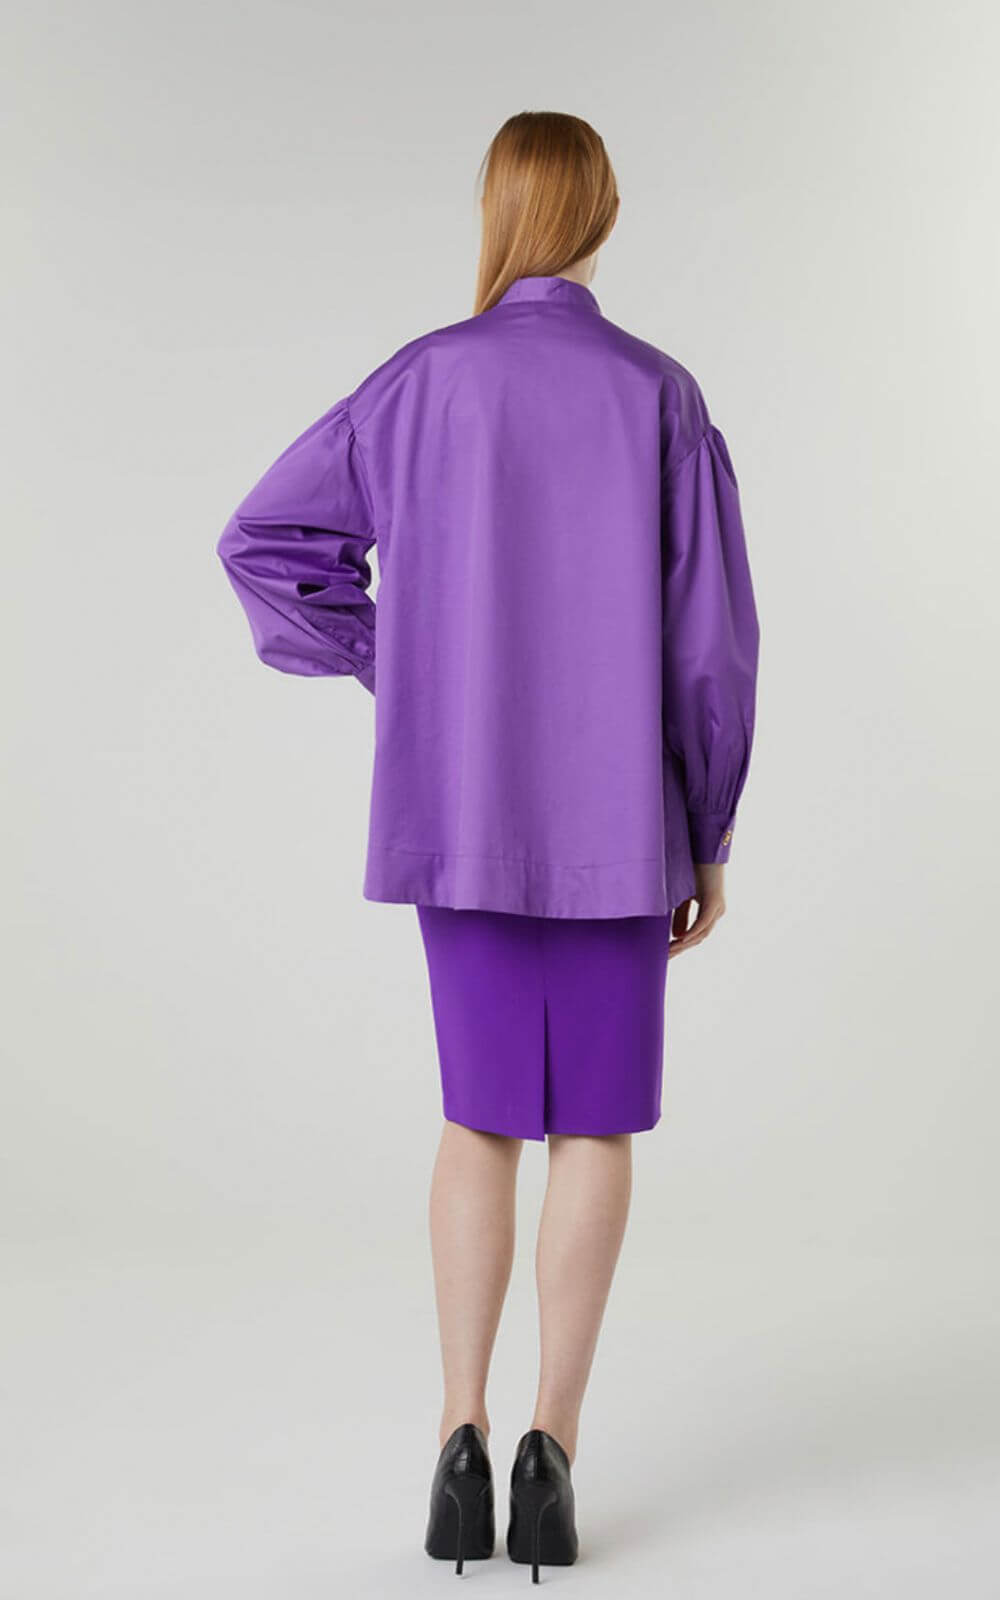 Μπλούζα Γυναικεία Ασύμμετρη Σε Boxy Γραμμή Purple-My Boutique